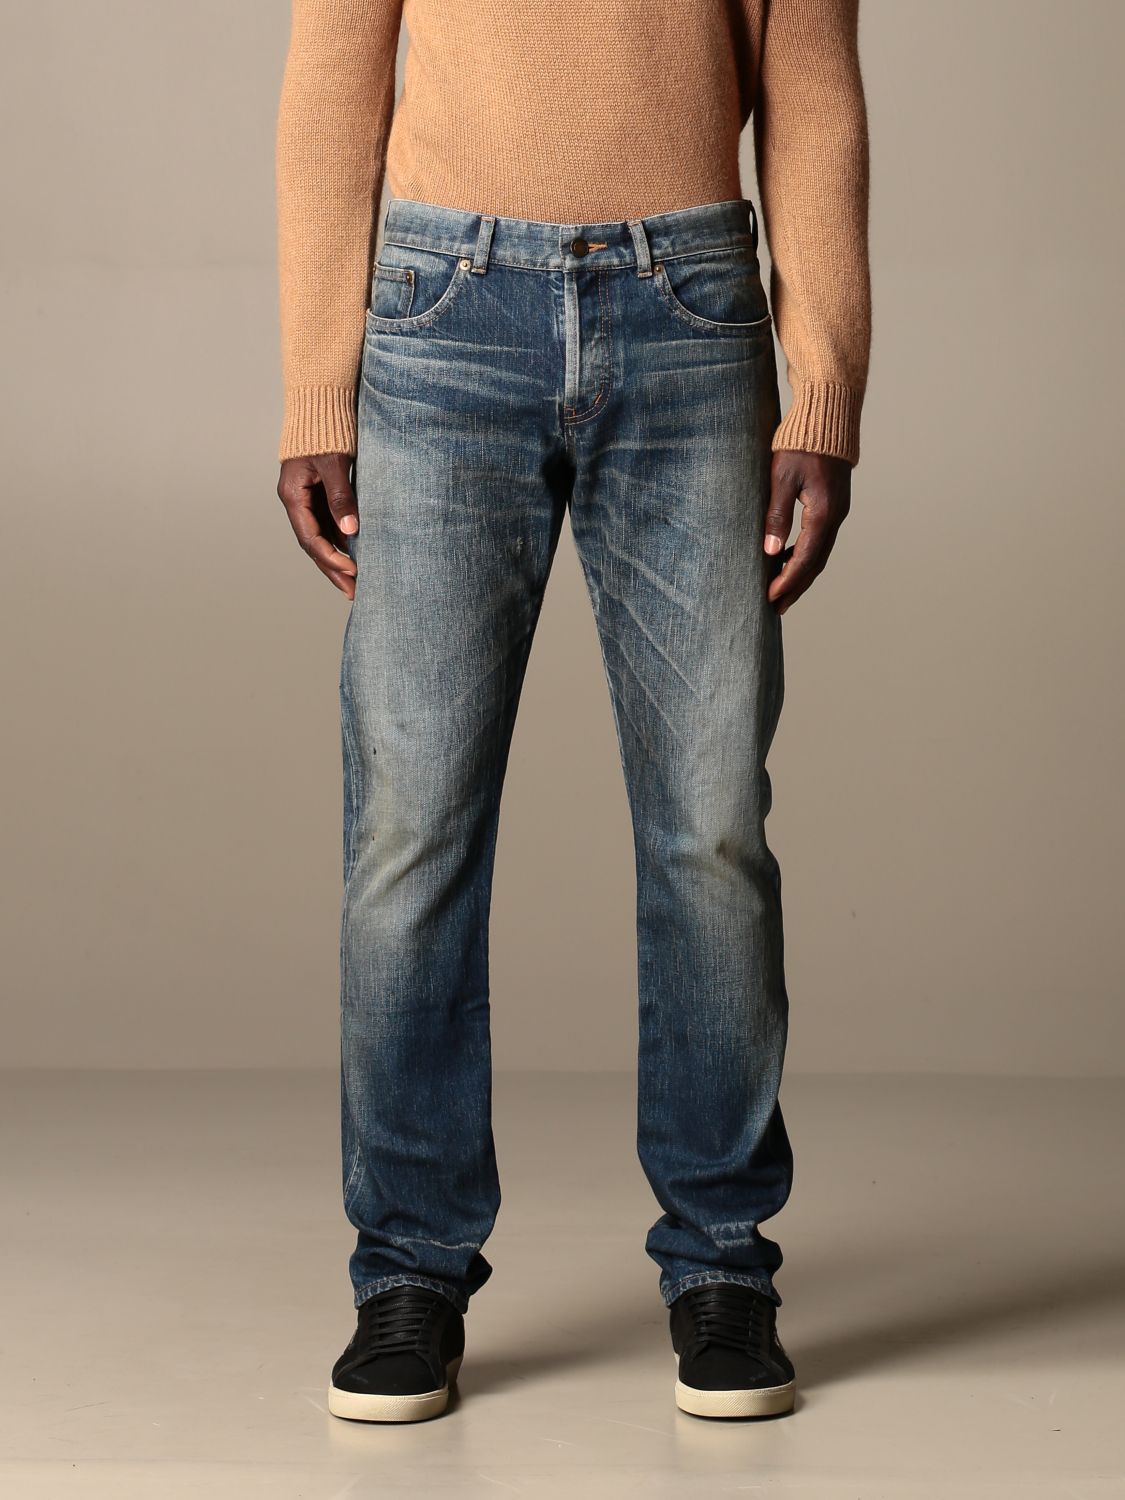 saint laurent jeans mens